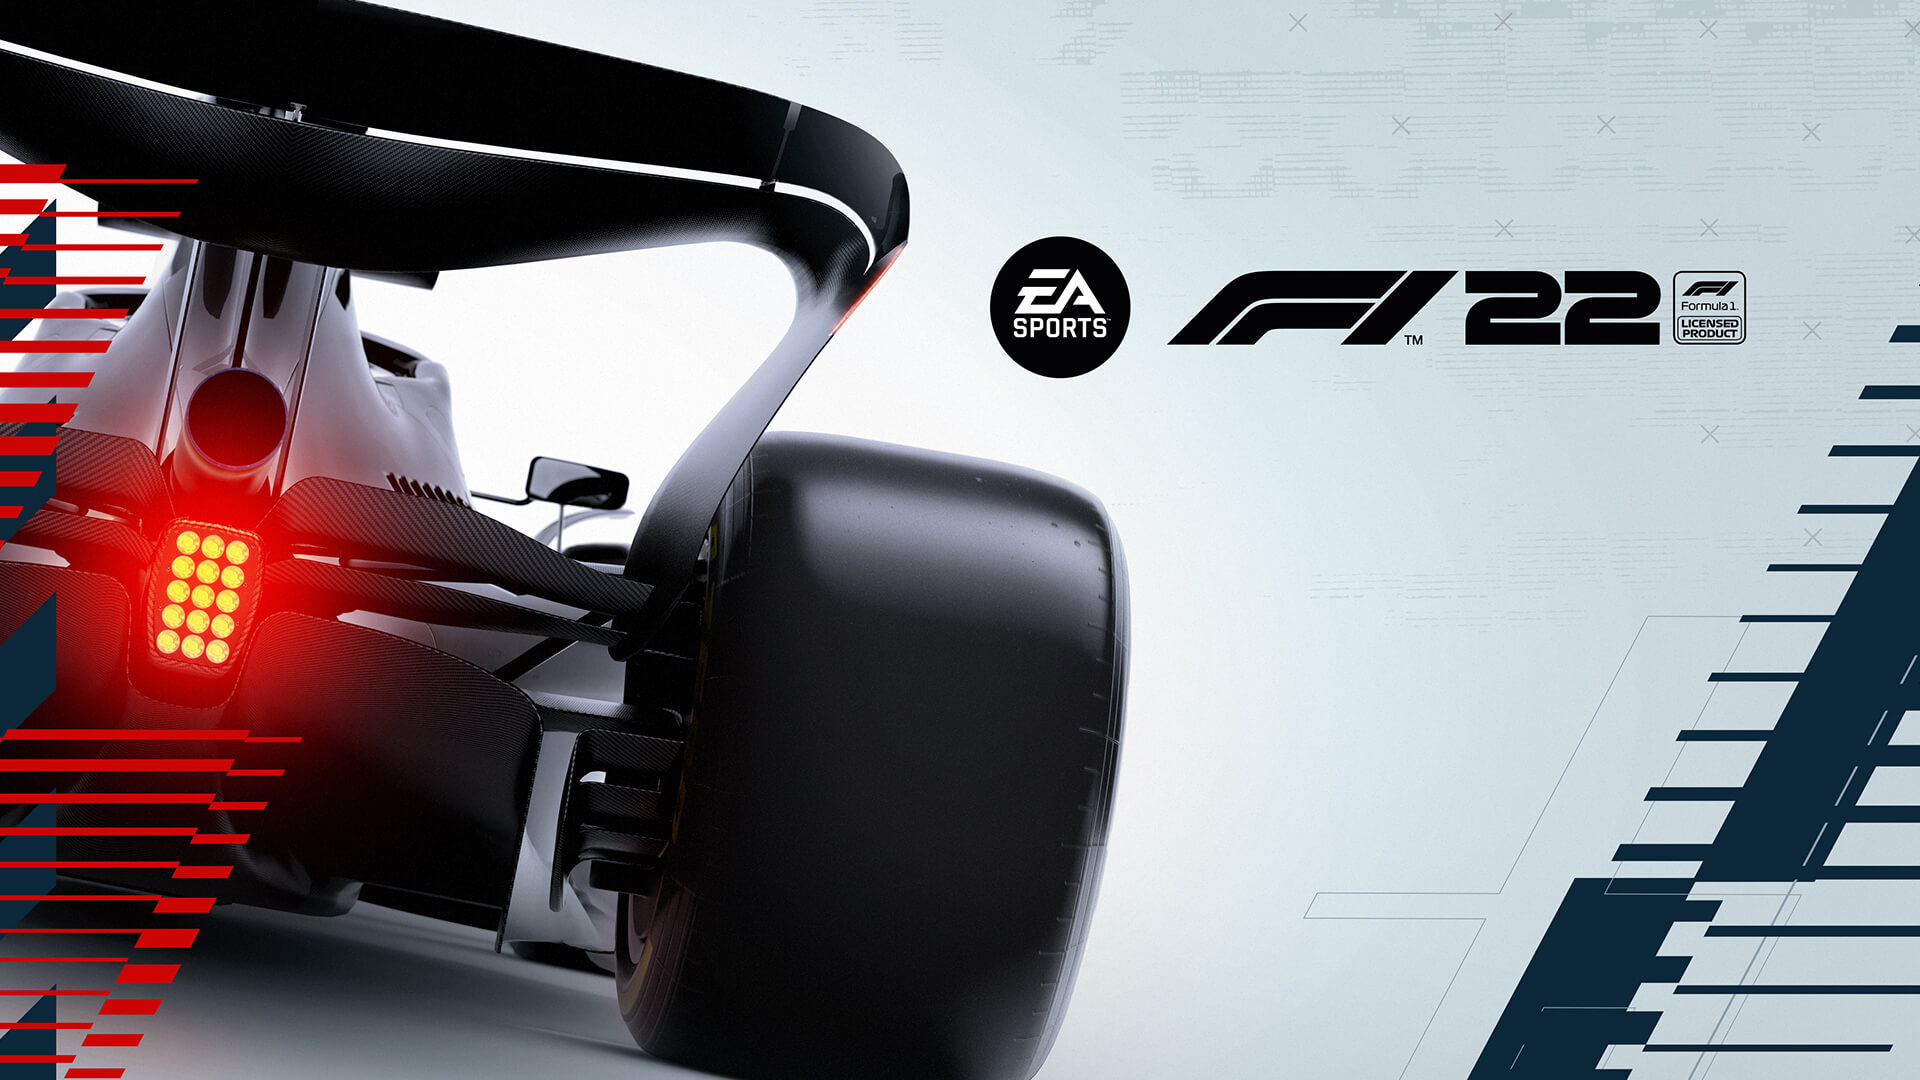 F1 2021 é grátis para jogar no PC e consoles neste fim de semana -   News